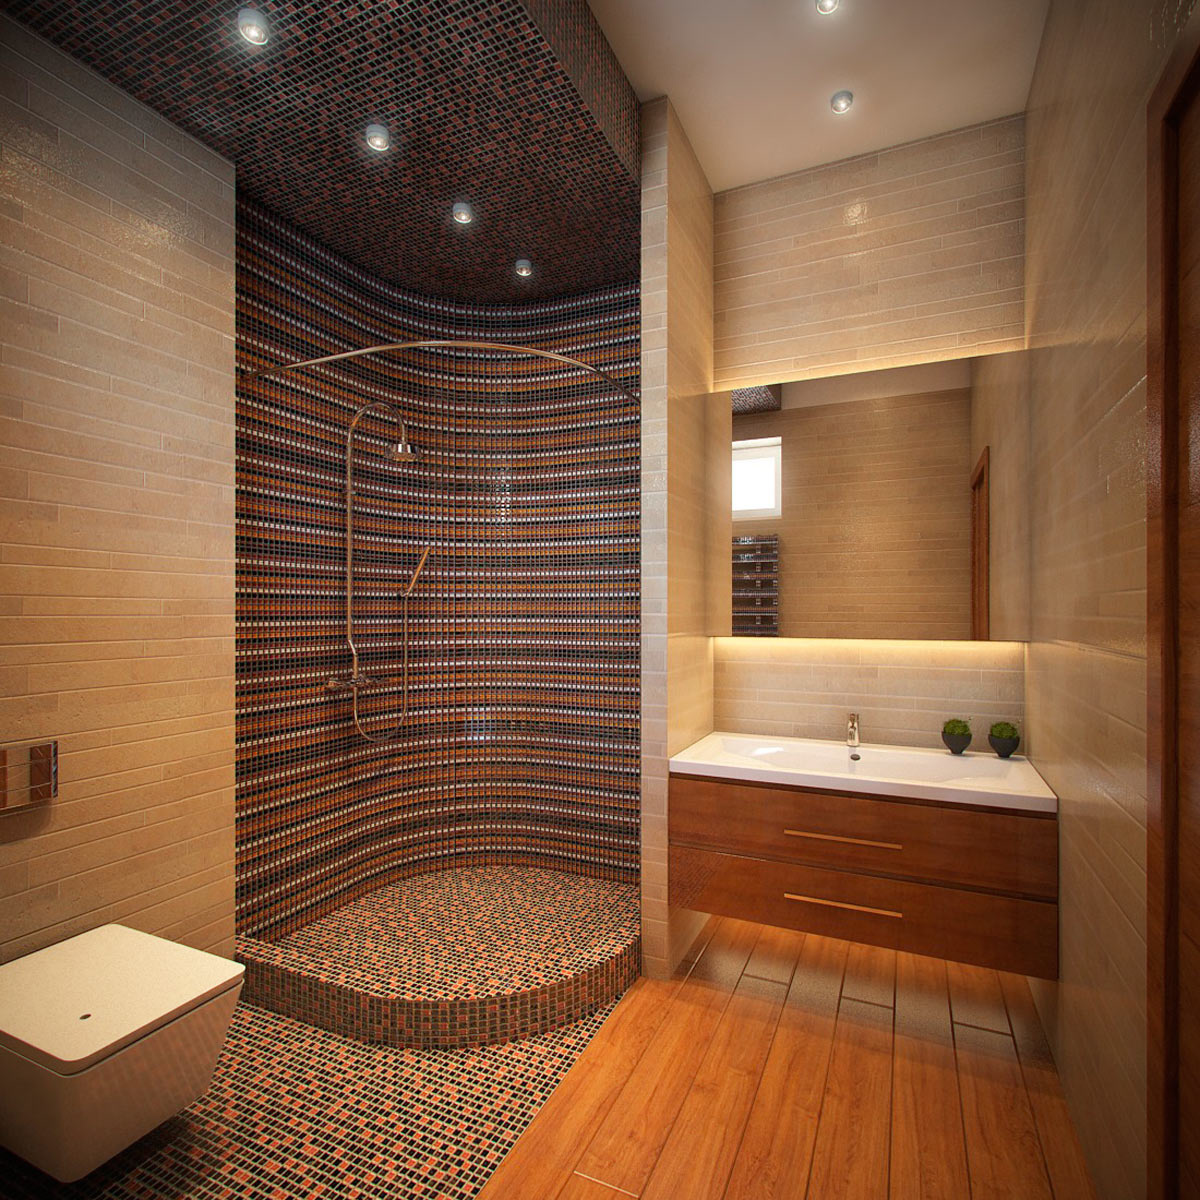 + фото идей дизайна ванной комнаты с душевой кабиной